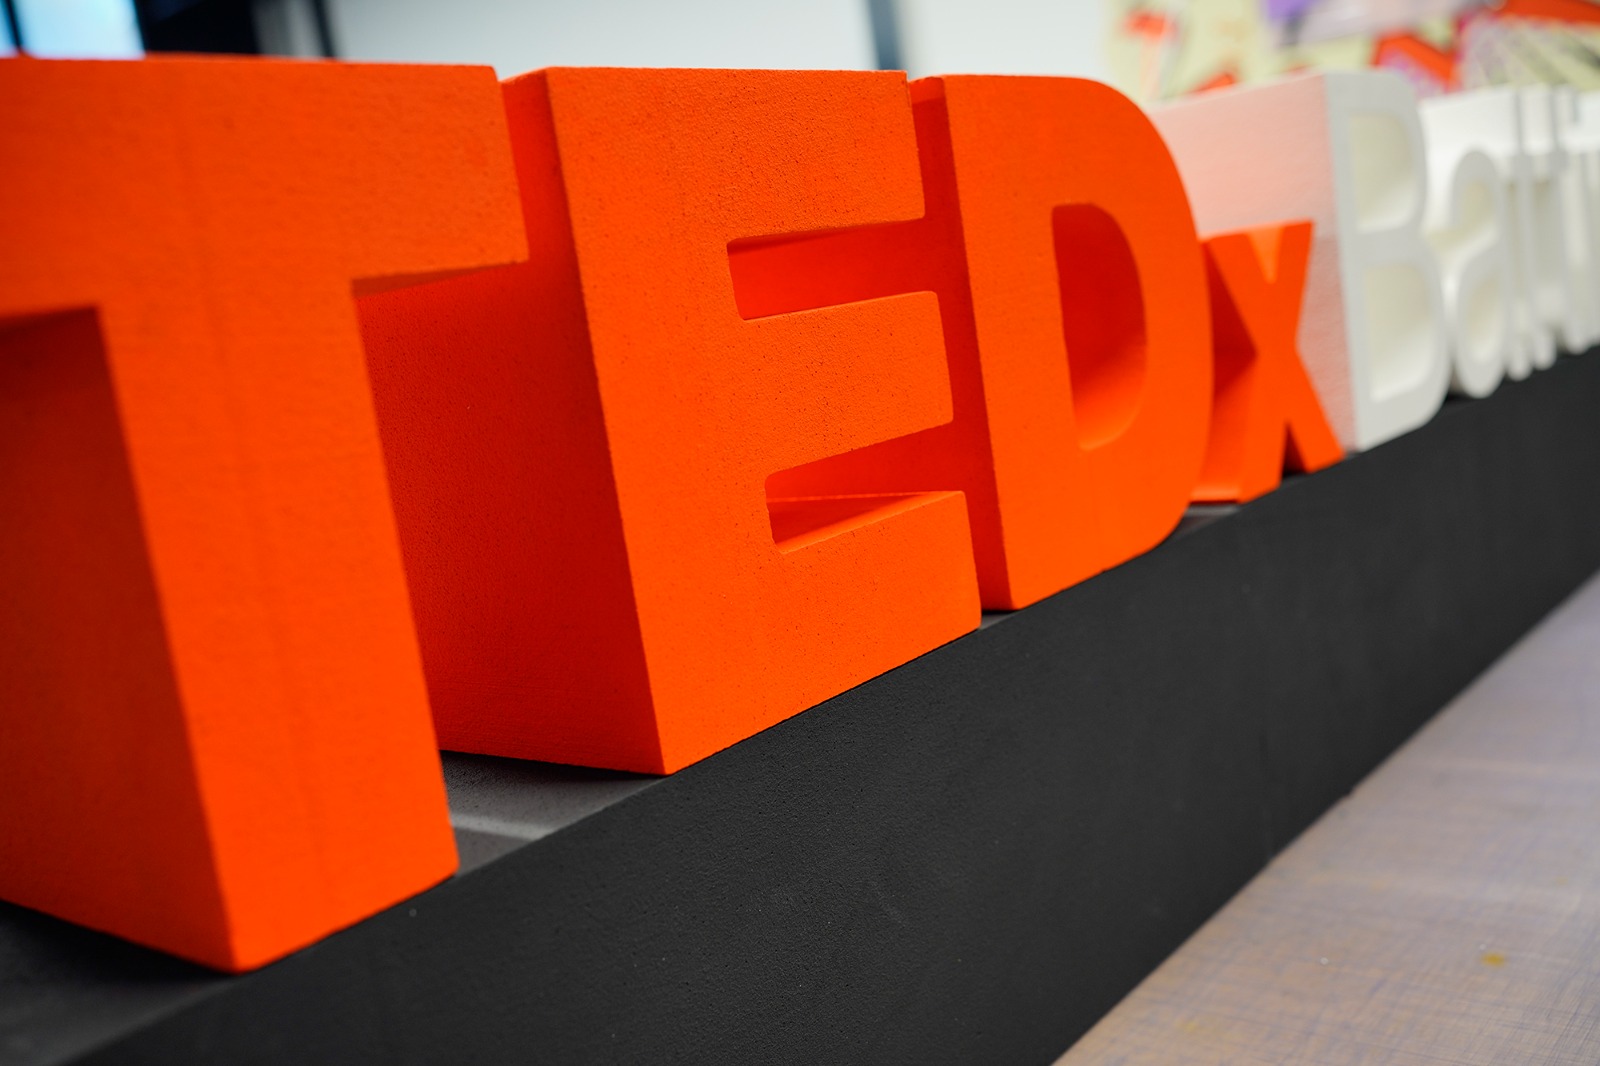 TEDxBattipaglia